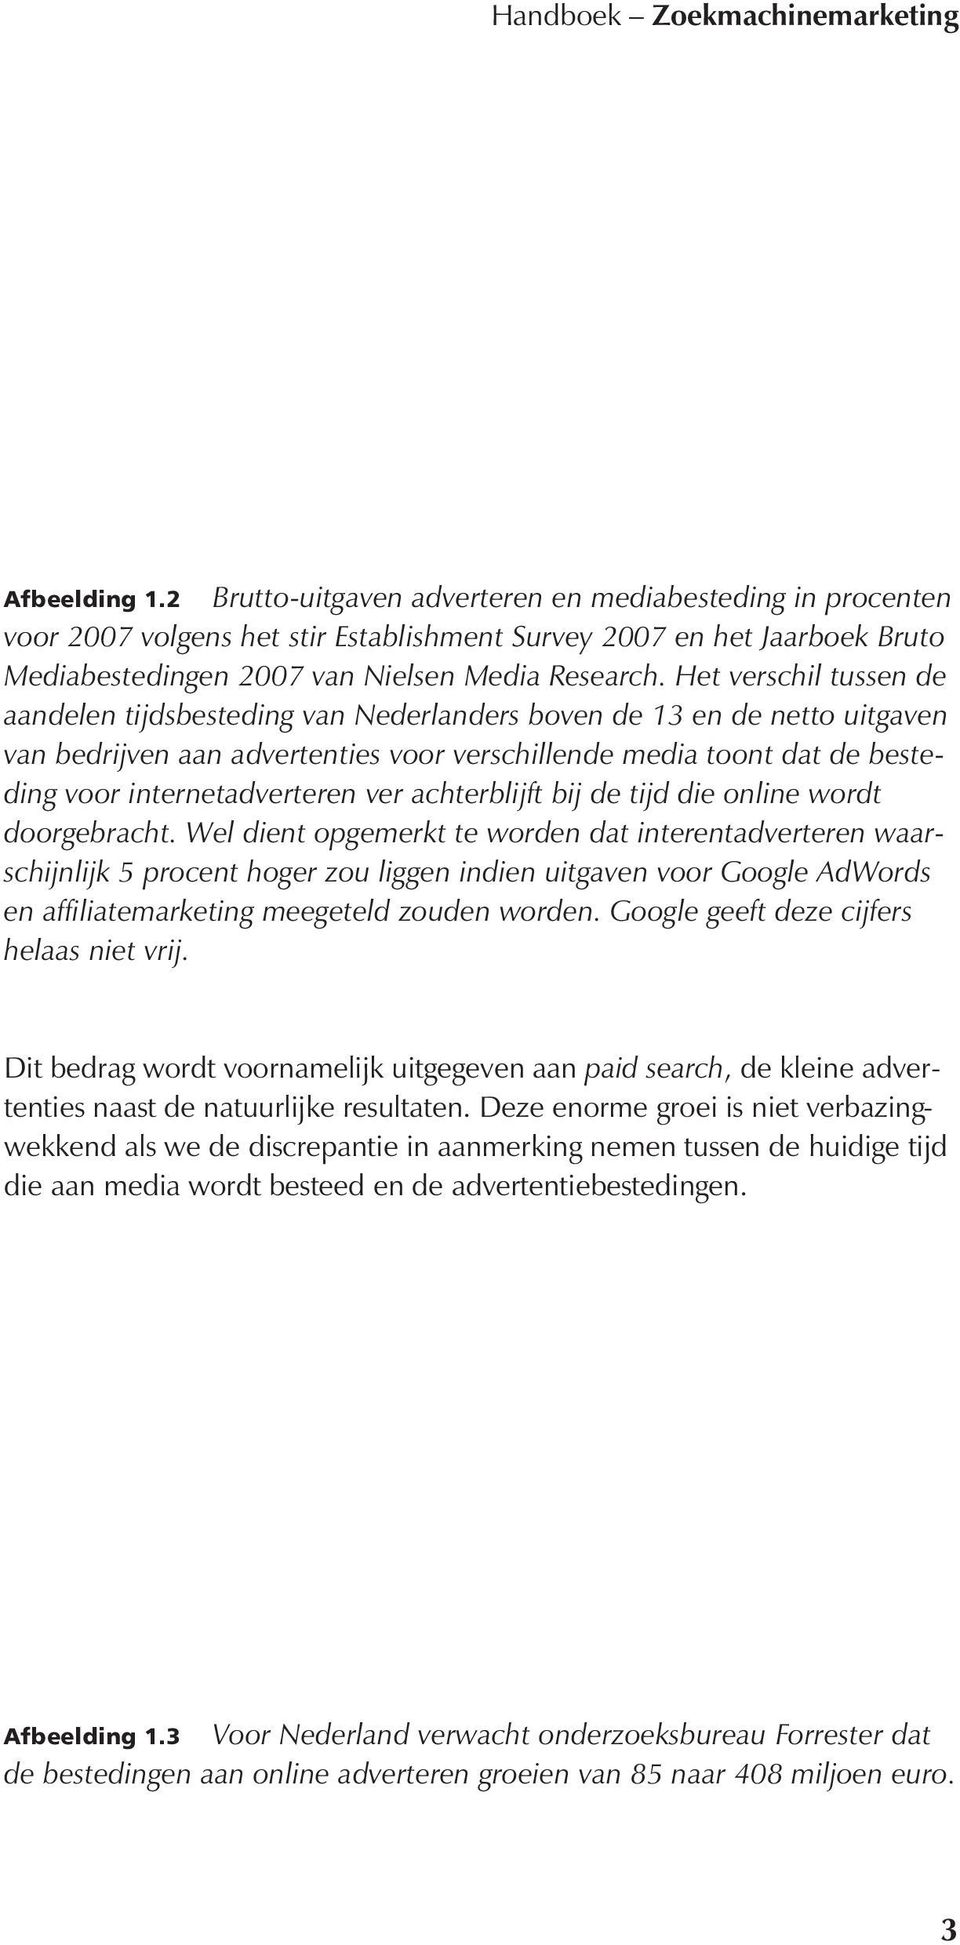 Het verschil tussen de aandelen tijdsbesteding van Nederlanders boven de 13 en de netto uitgaven van bedrijven aan advertenties voor verschillende media toont dat de besteding voor internetadverteren